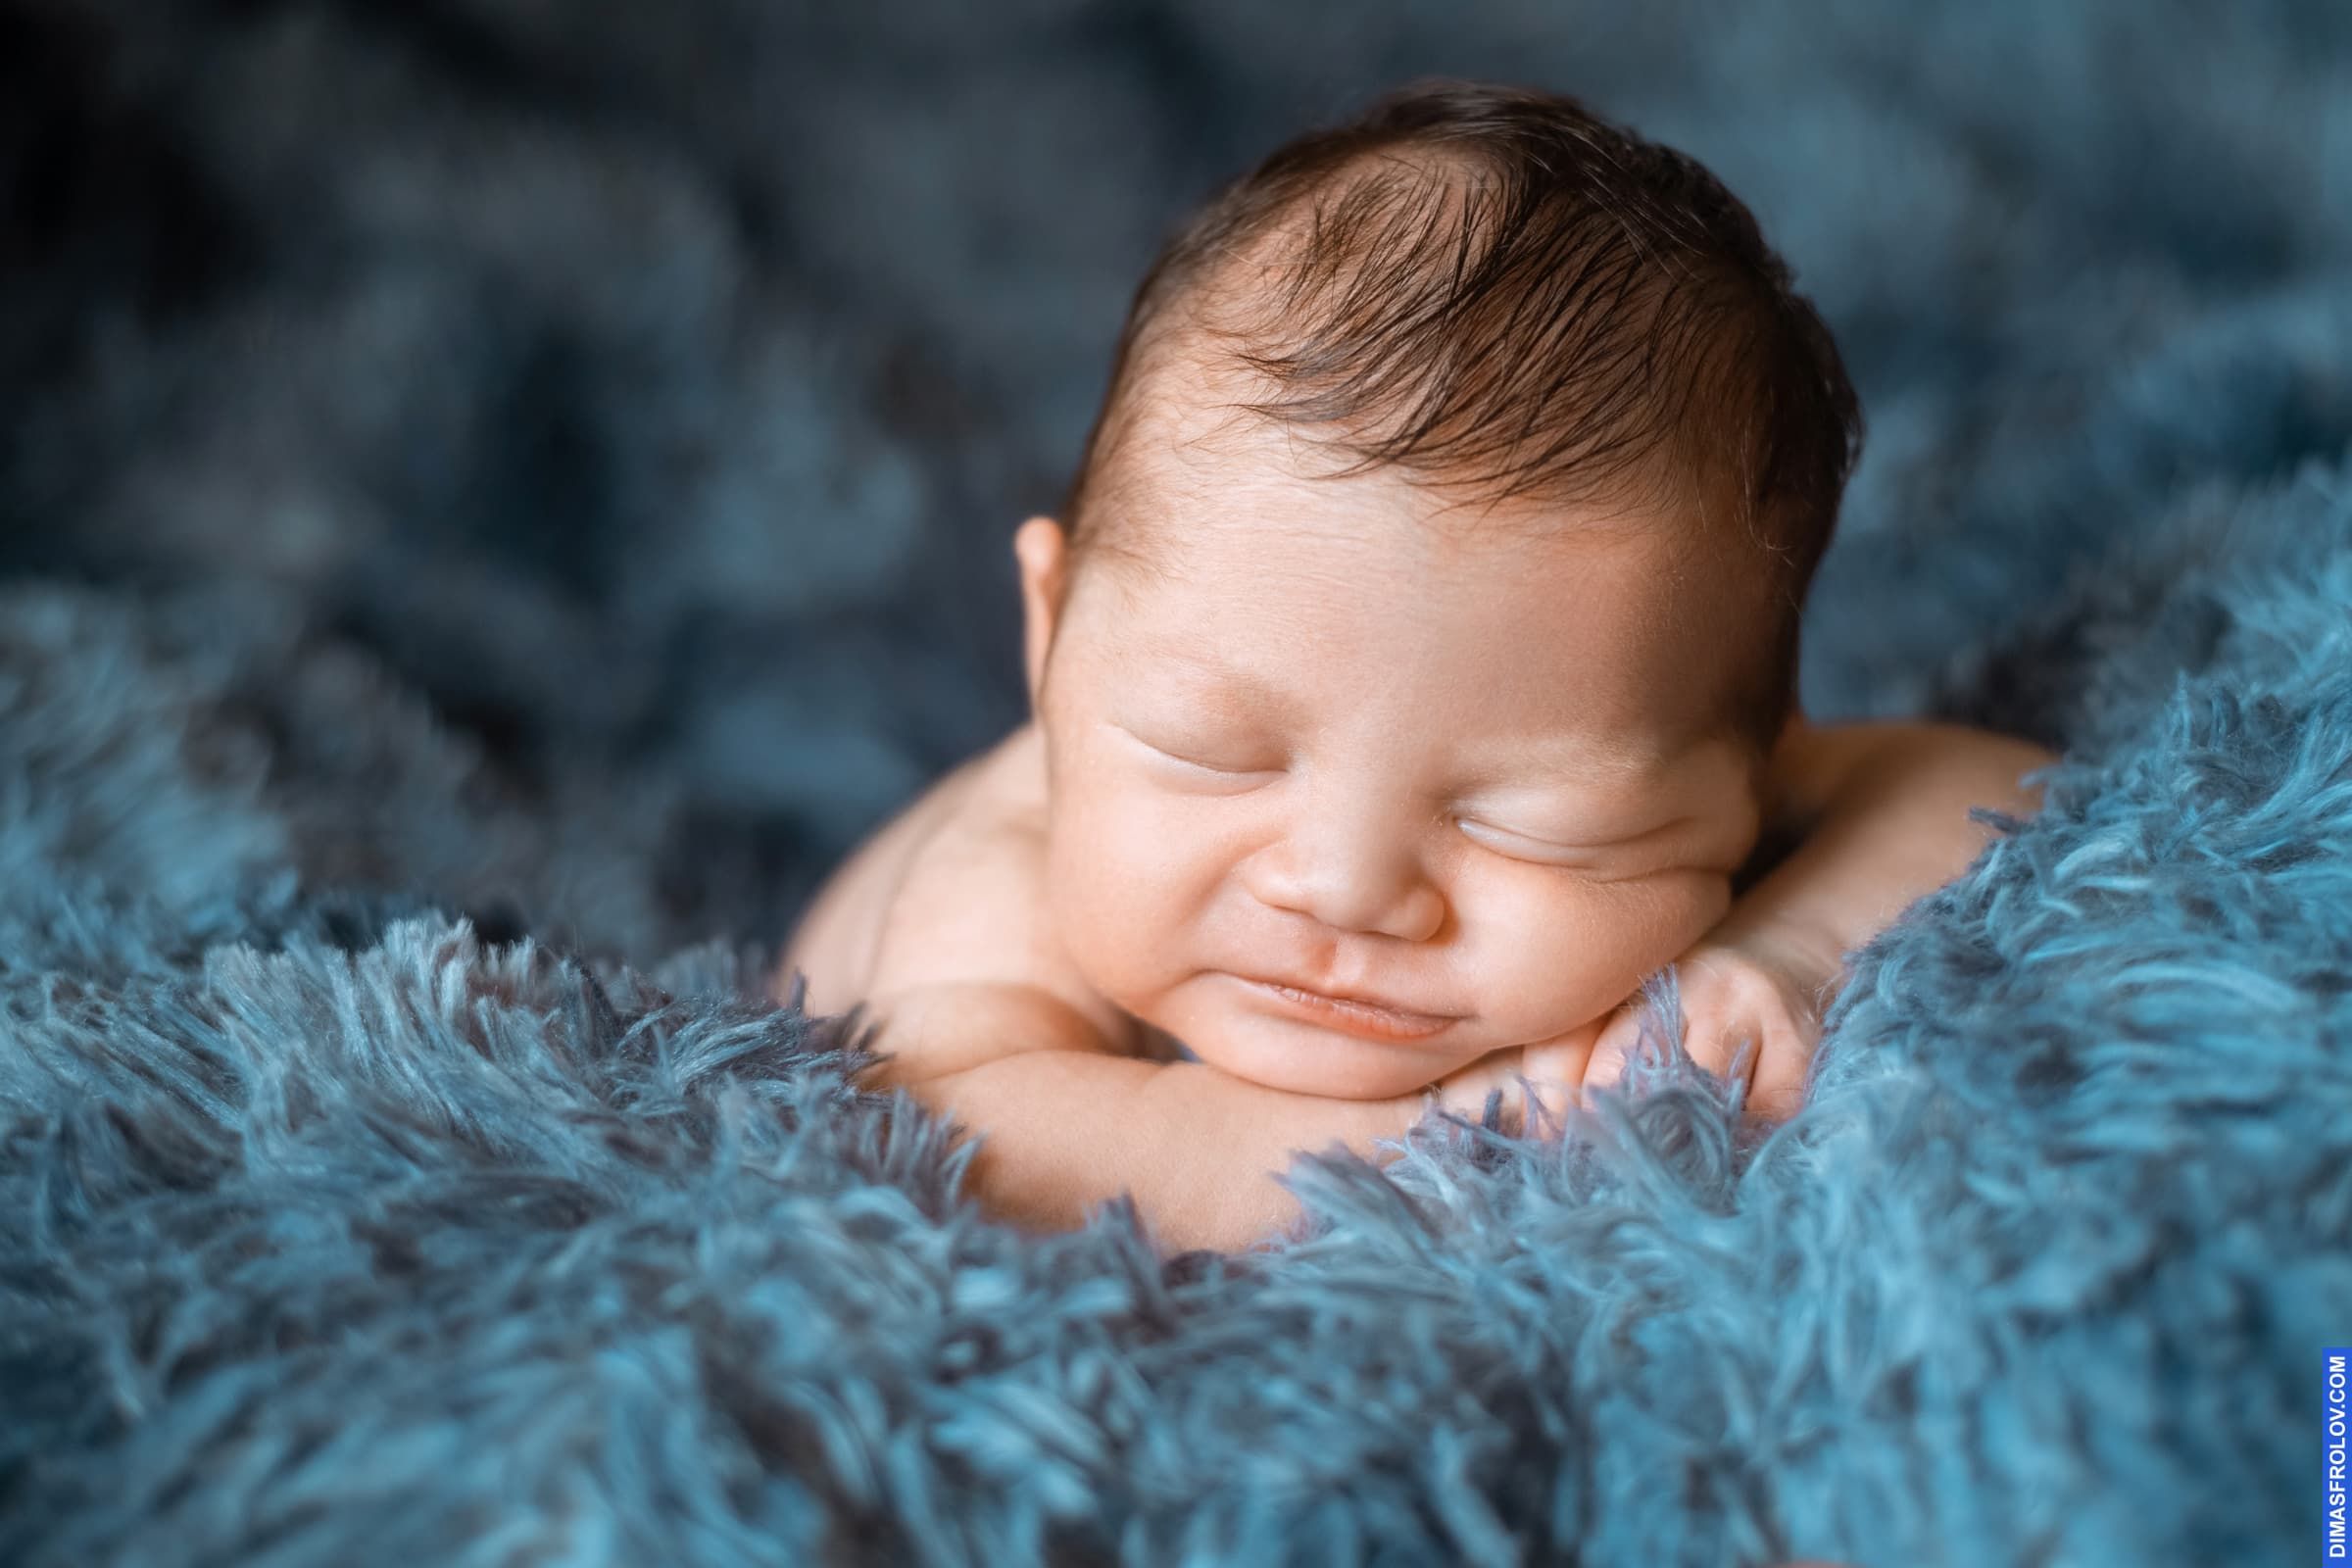 คลอดบุตร, การถ่ายภาพทารกแรกเกิด. photo1 baby-tao-016-2fca961e79. Dimas Frolov. Koh Samui Photographer. DimasFrolov.com